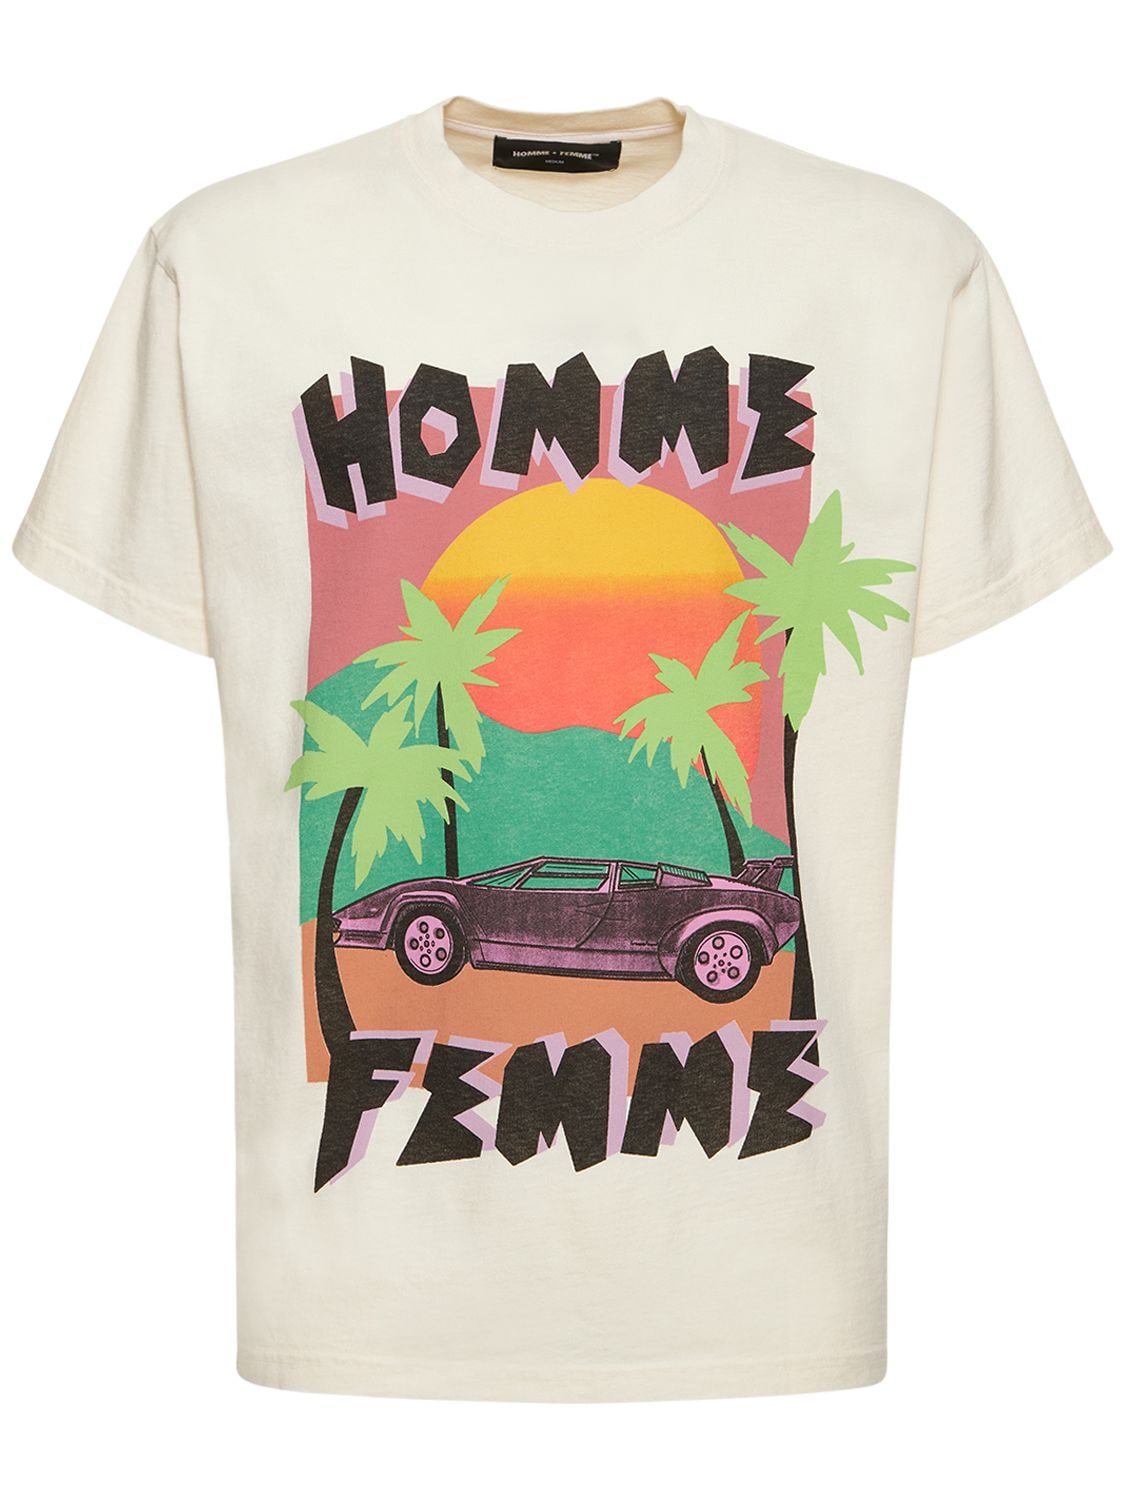 HOMME + FEMME LA Paper Cut Cotton Jersey T-shirt